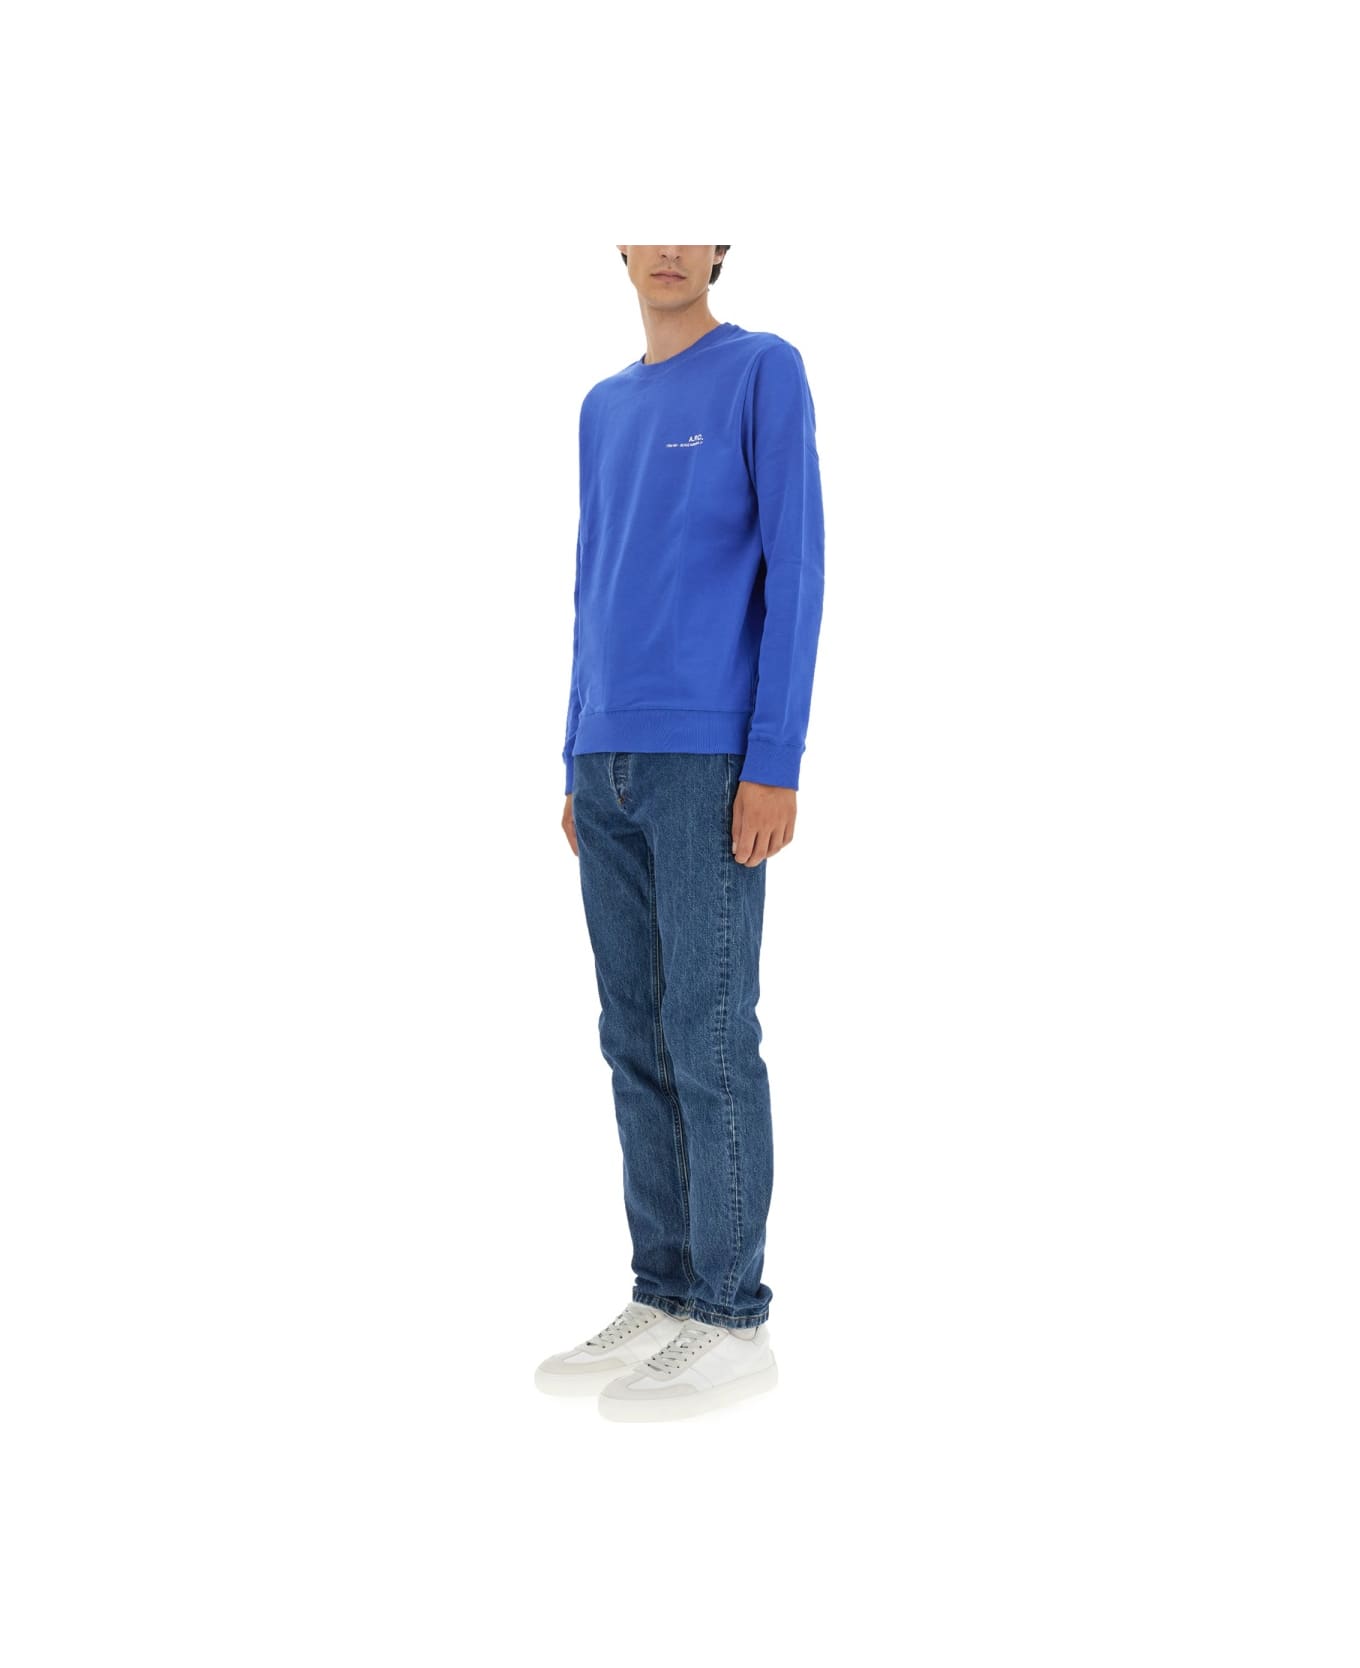 A.P.C. Sweatshirt With Logo - BLUE フリース